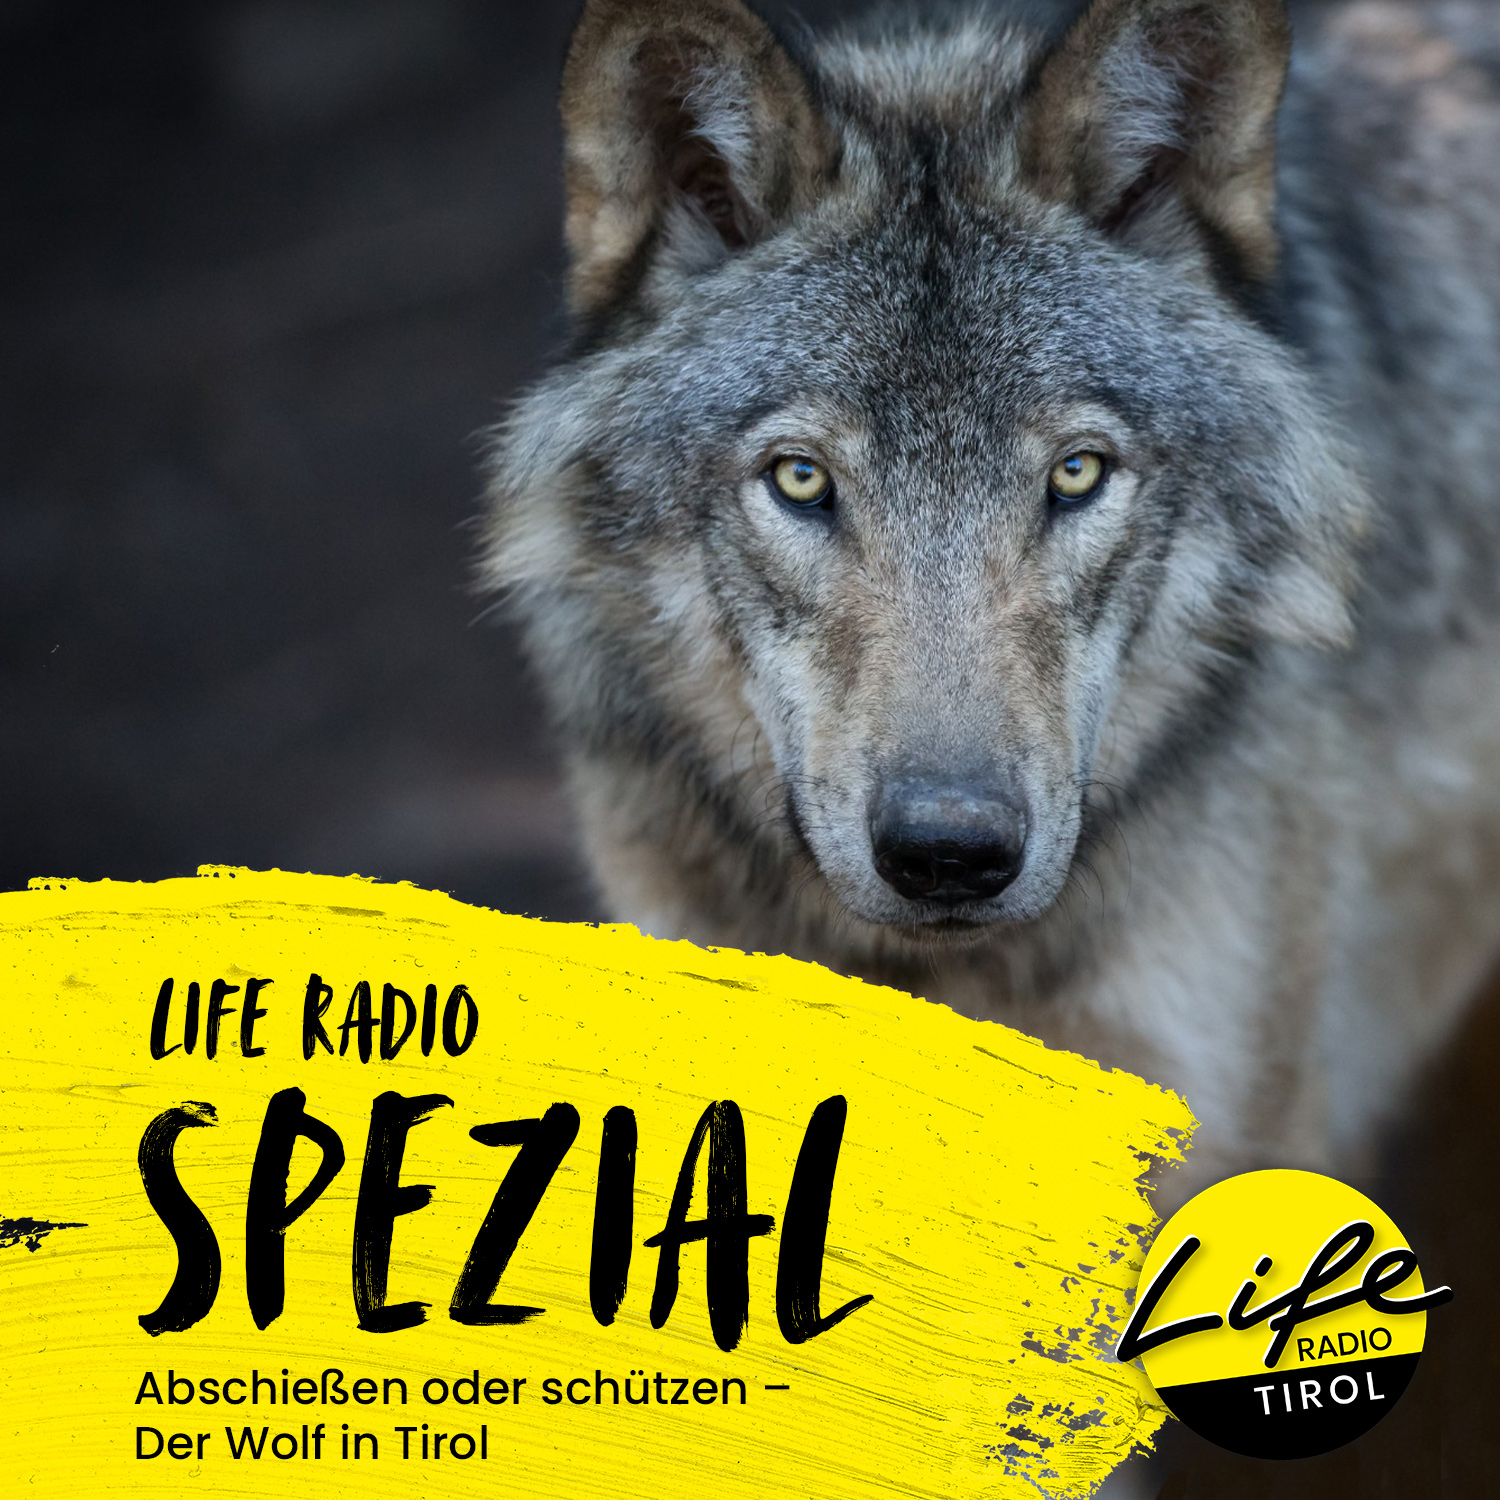 Life Radio Spezial: „Abschießen oder schützen – Der Wolf in Tirol“